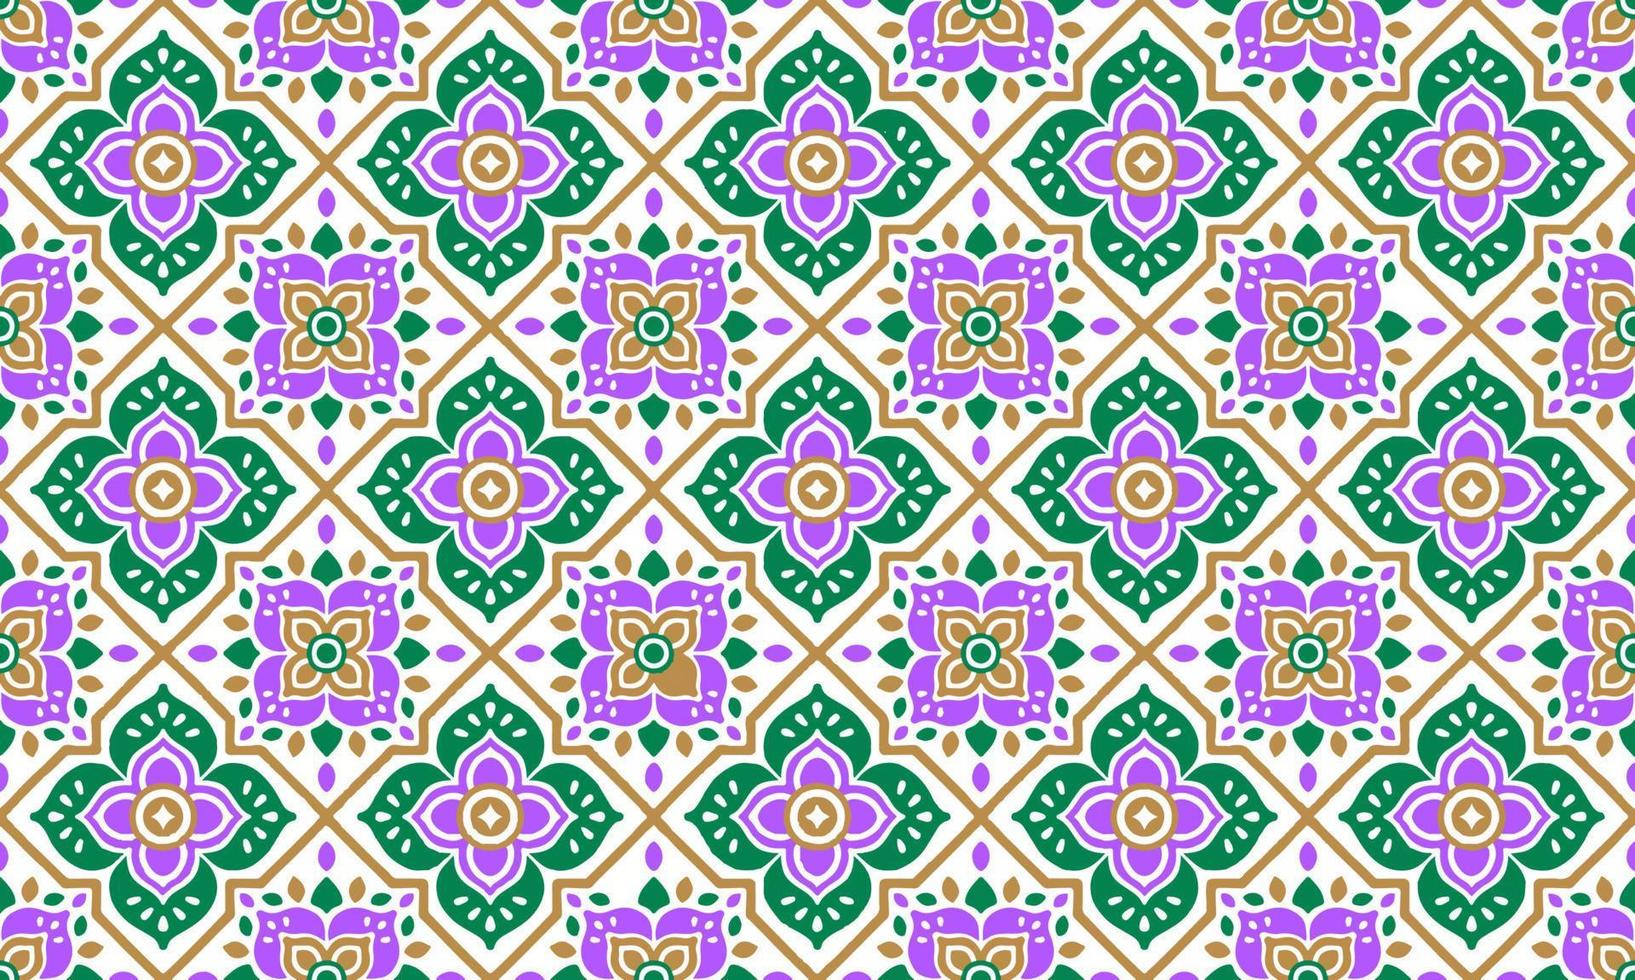 fundo abstrato étnico bonito verde roxo flor de ouro geométrico tribal motivo popular árabe oriental padrão nativo design tradicional papel de parede do tapete roupas tecido embrulho impressão vetor popular batik